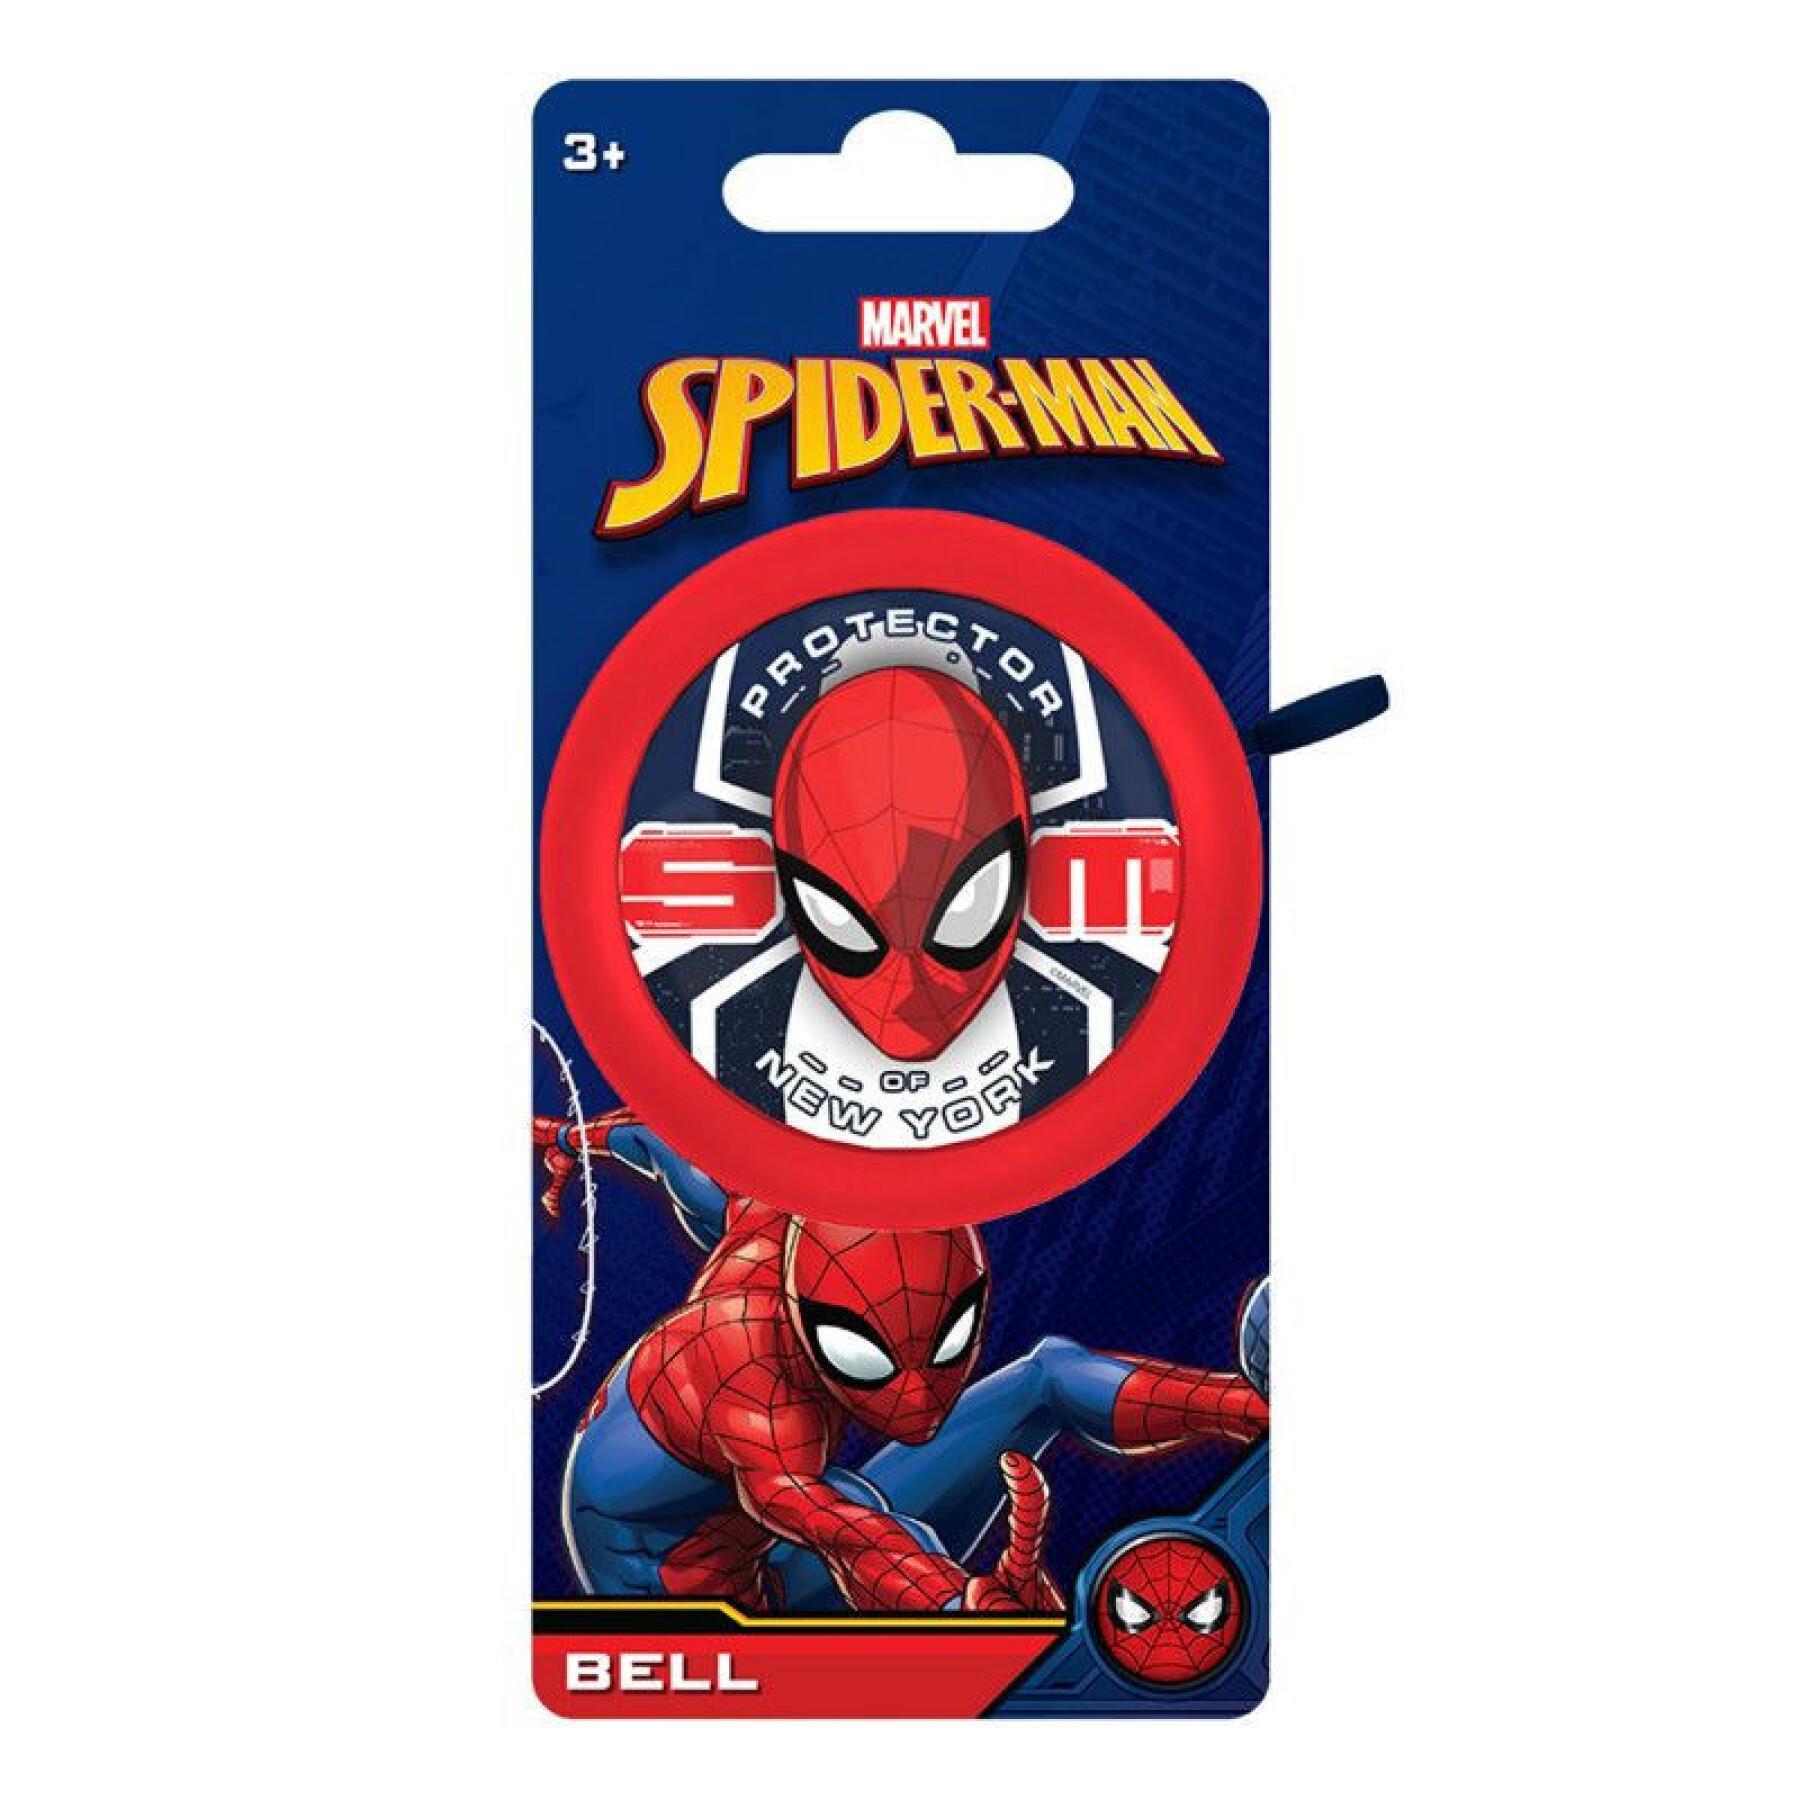 Sonnette timbre enfant Disney Spiderman